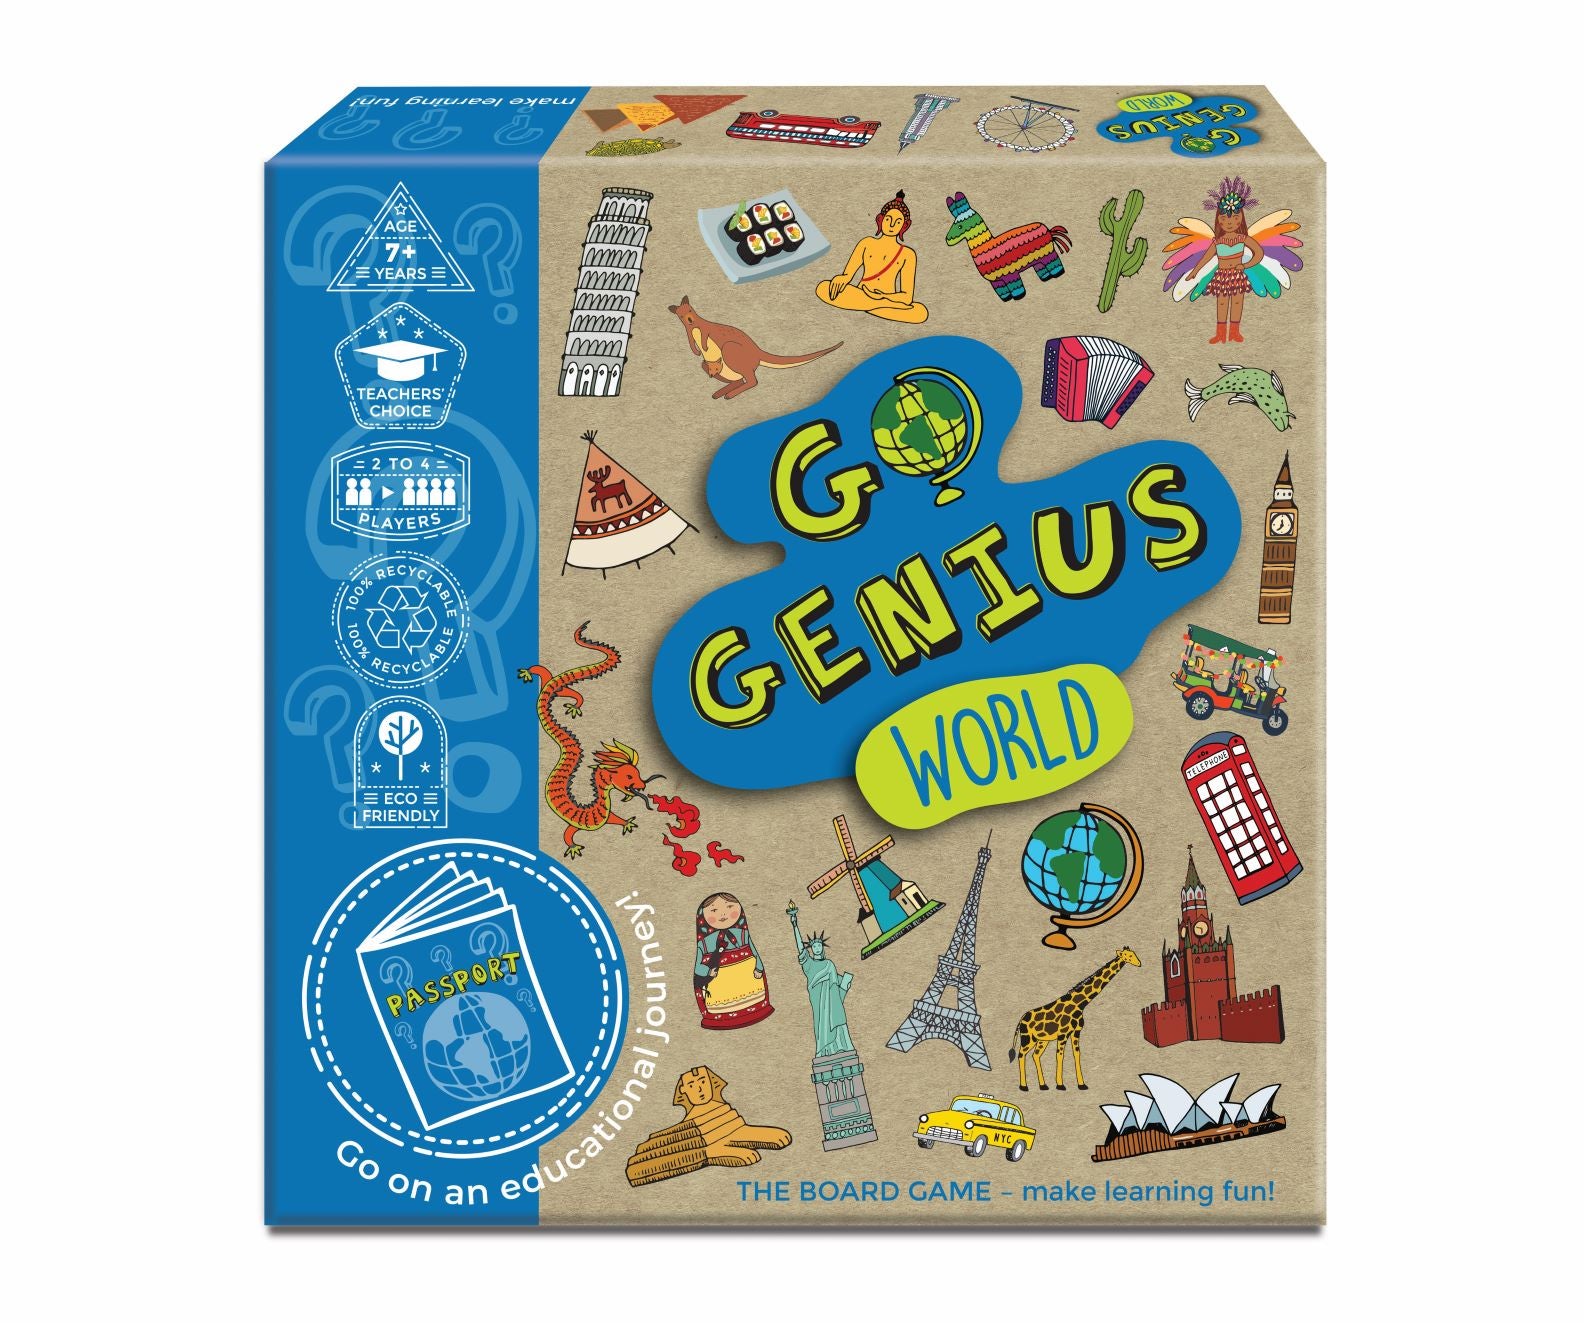 Go Genius World Game